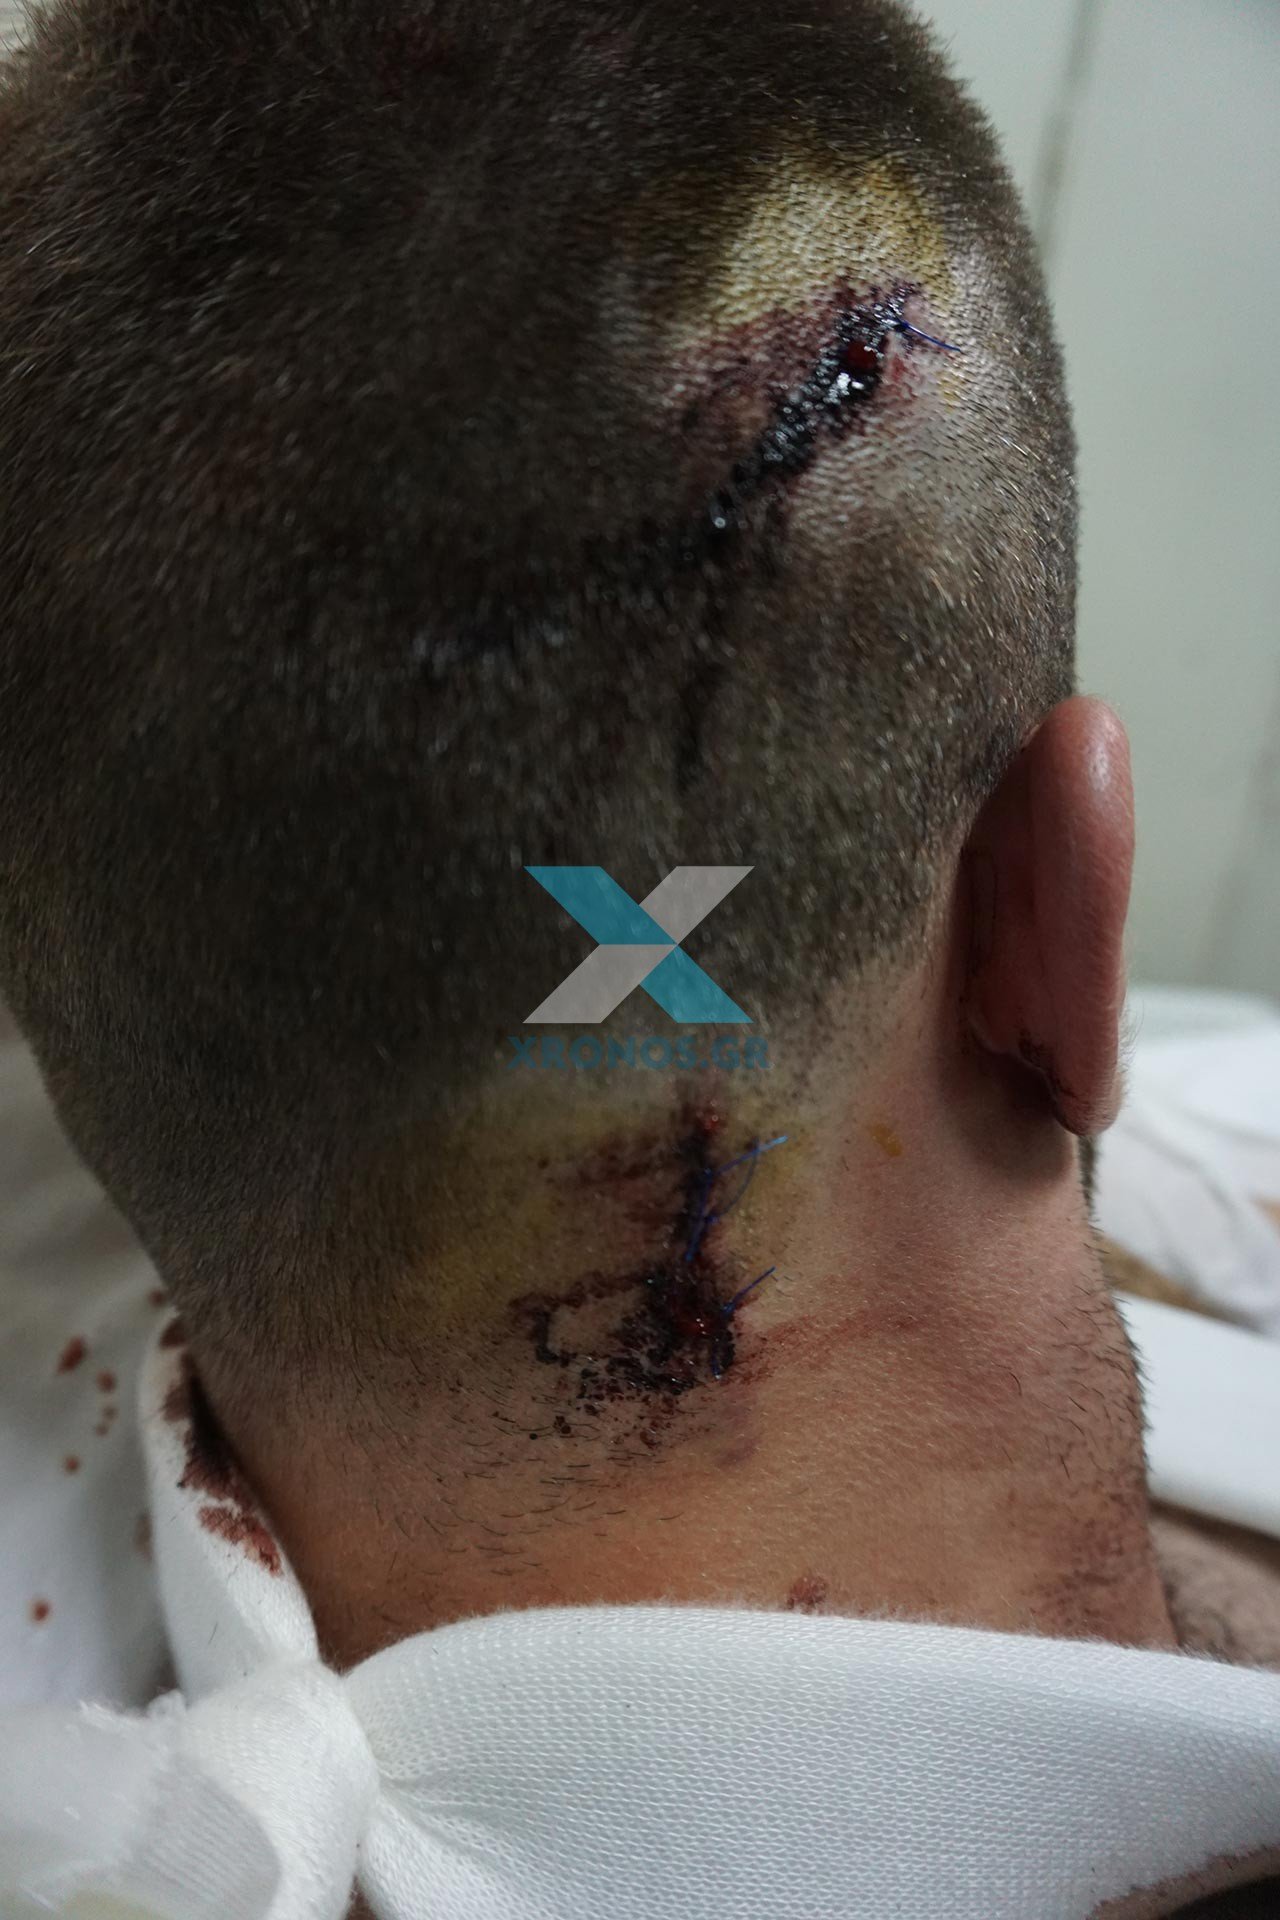 Κομοτηνή: Φωτογραφίες σοκ του αστυνομικού που μαχαιρώθηκε από μετανάστη